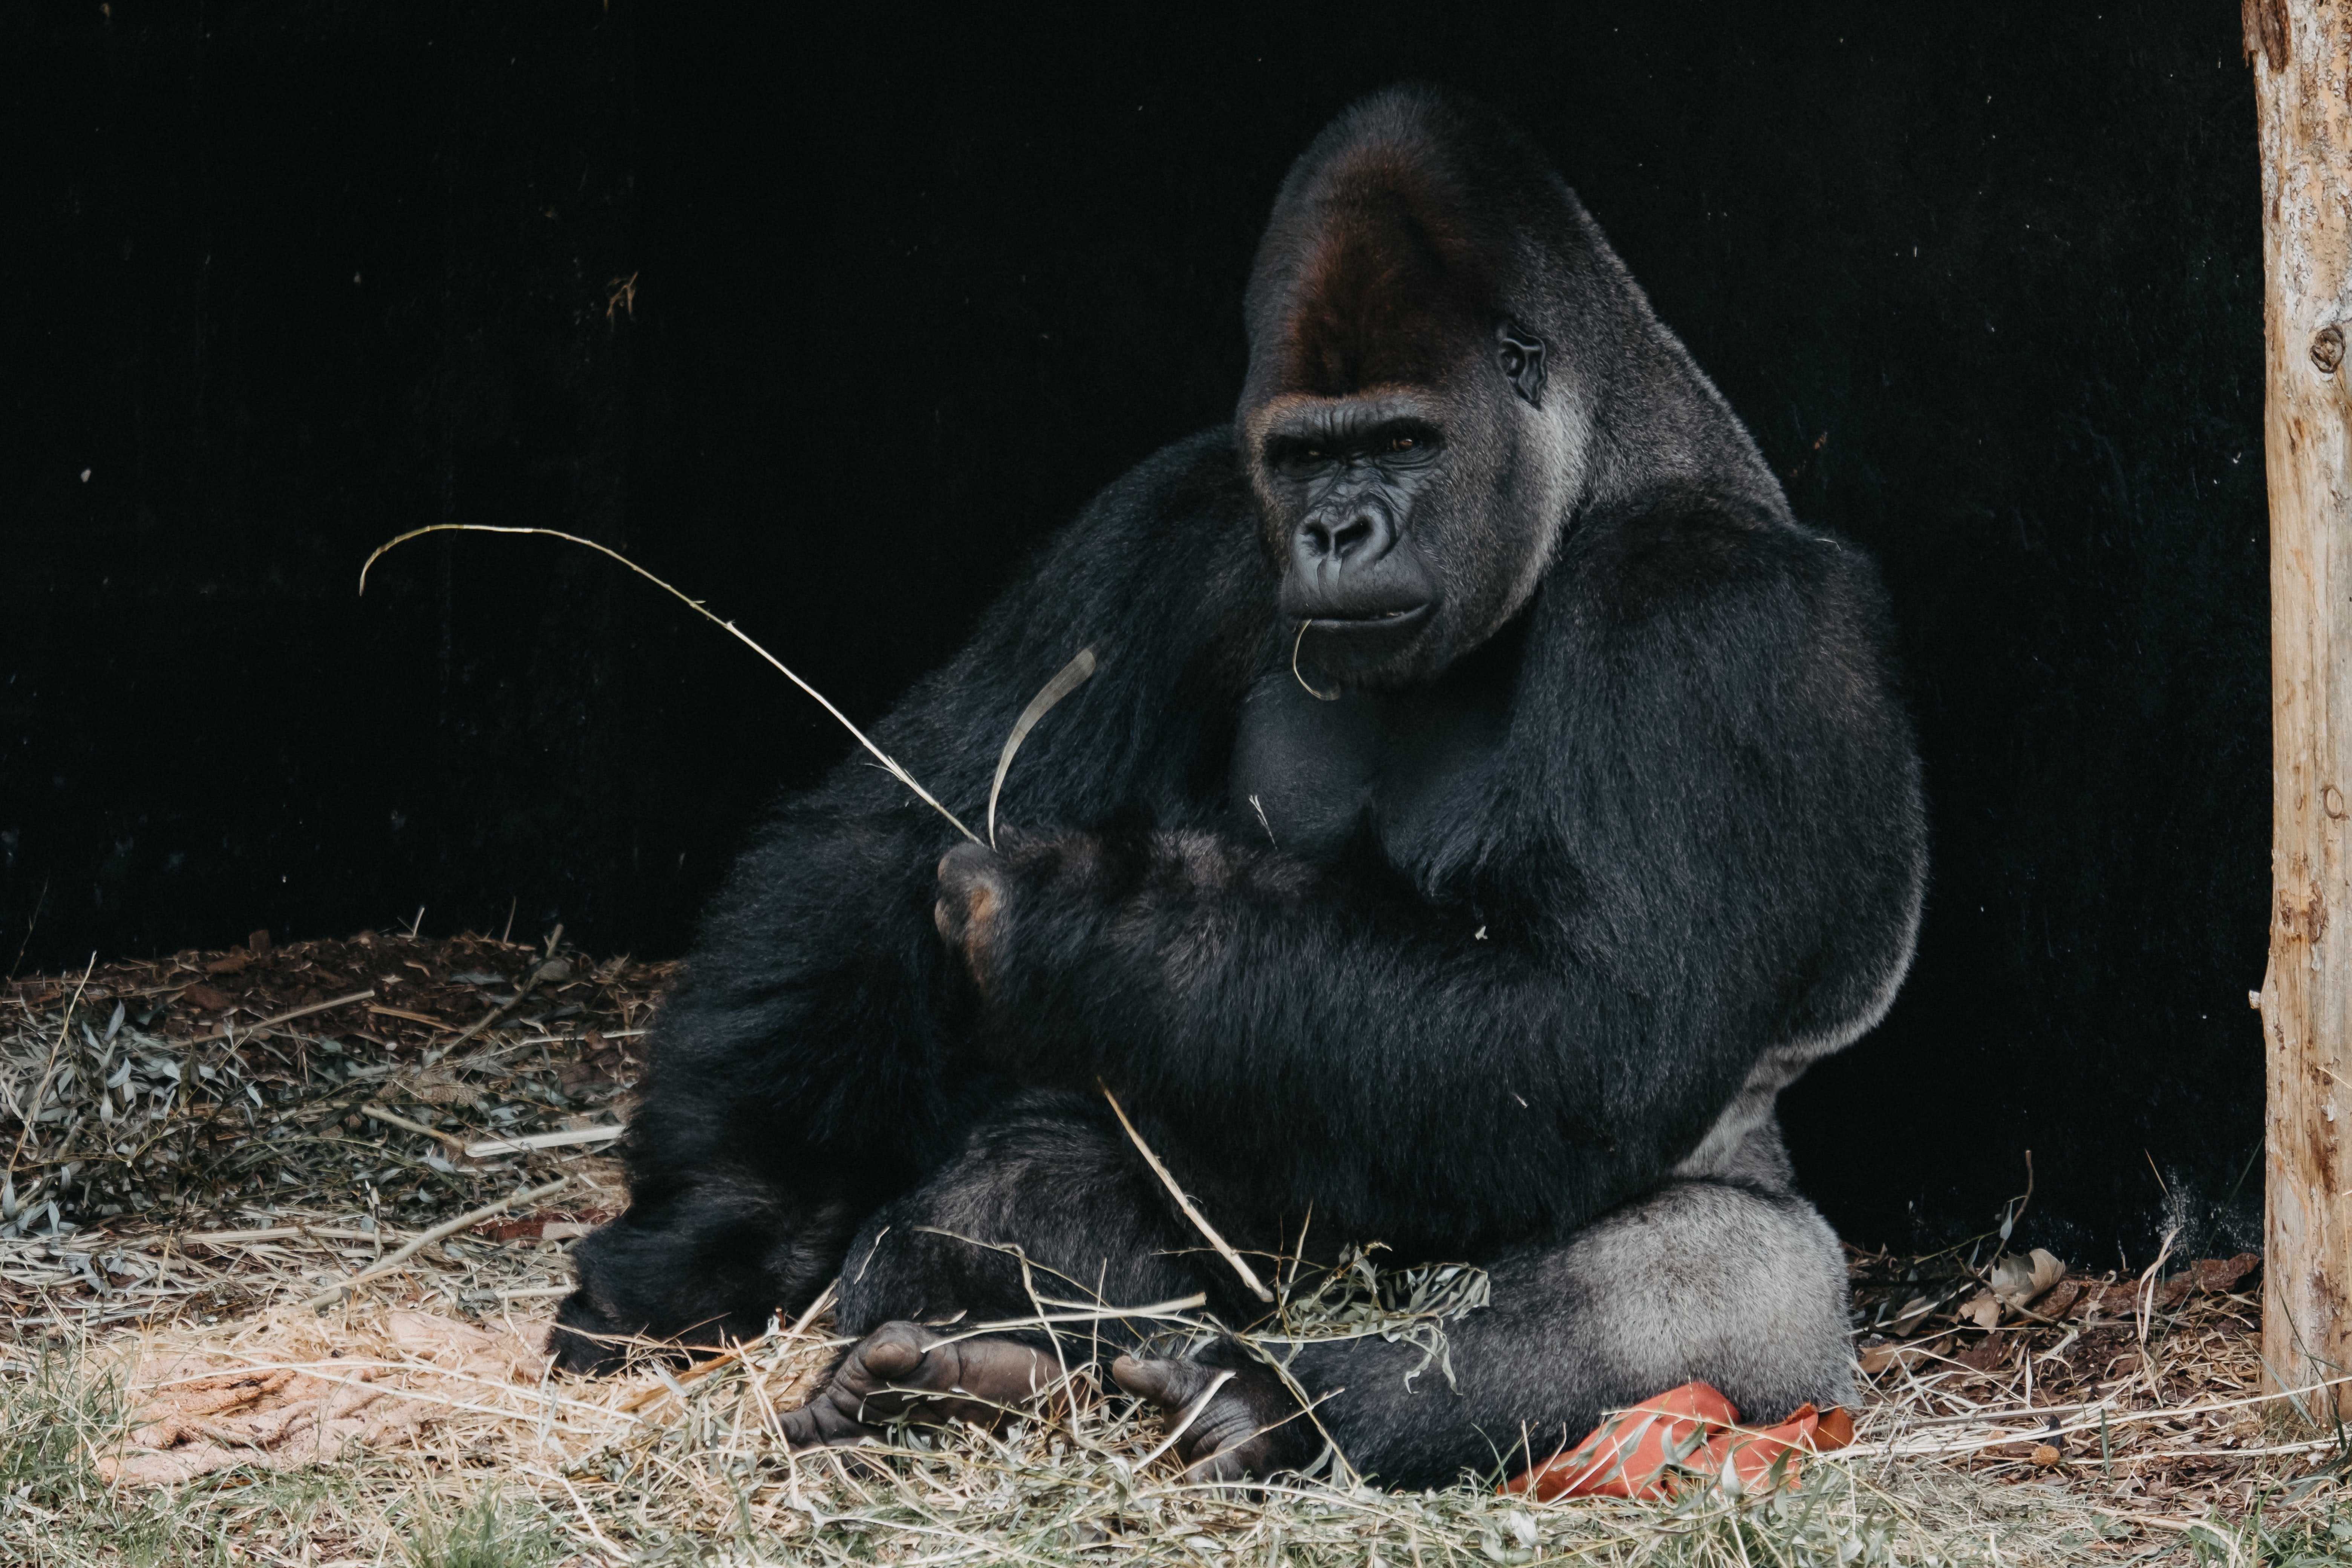 Ein Gorilla, der auf Gras kaut. | Quelle: Pexels/ Julia Filirovska